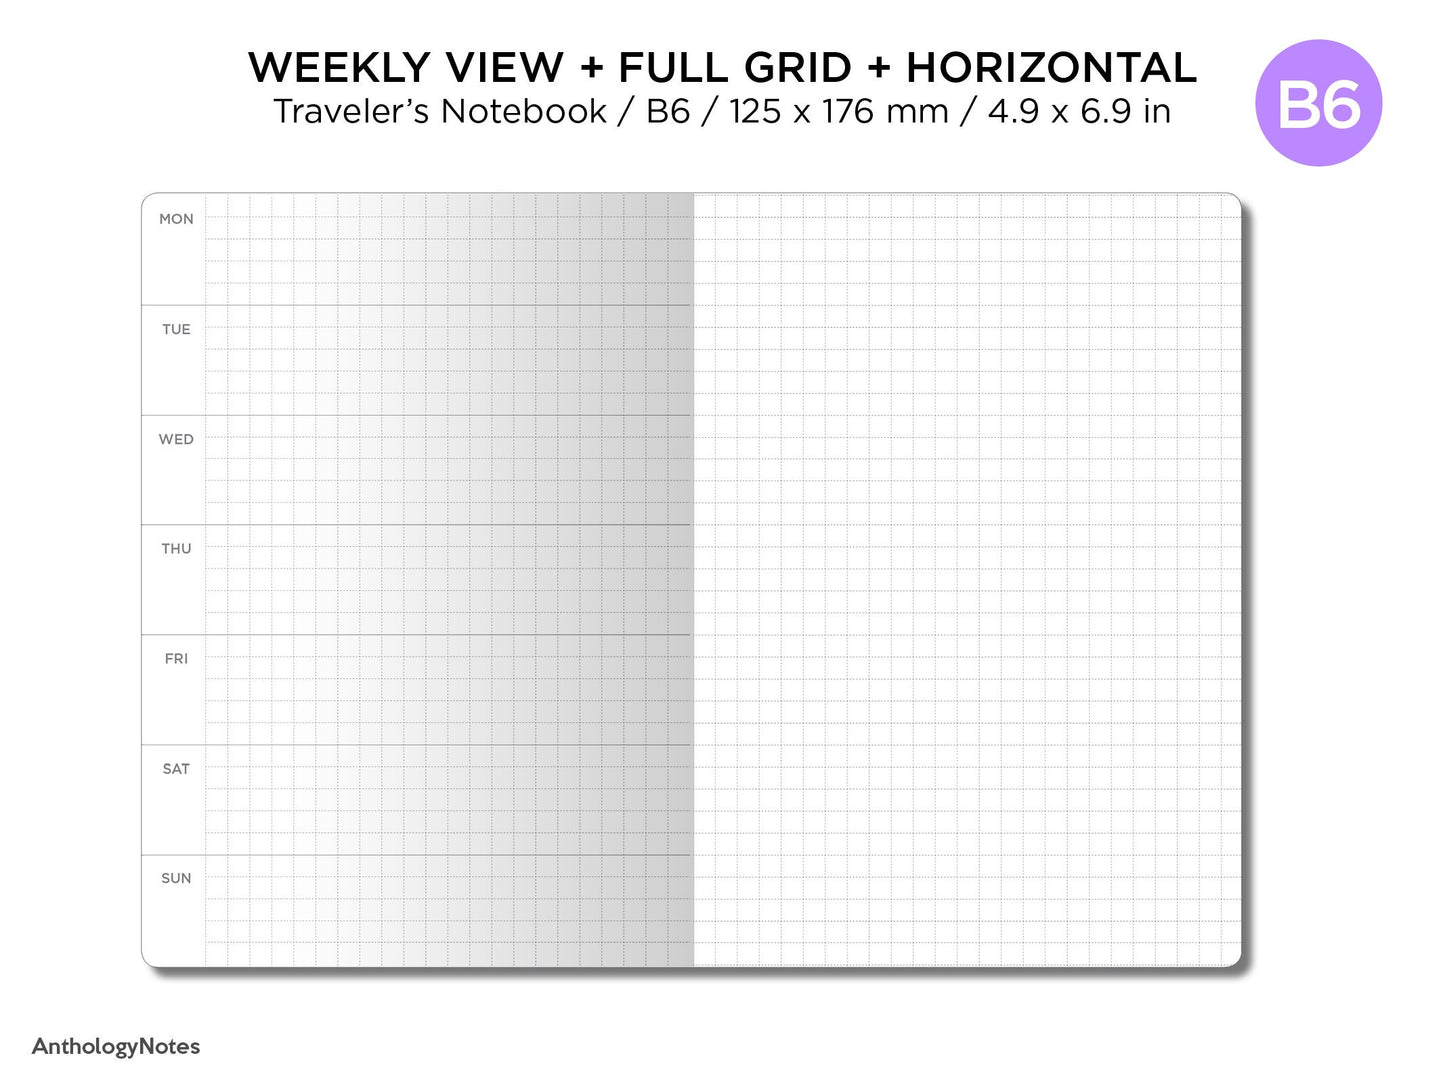 B6 Weekly View Horizontal Full GRID Traveler's Notebook Printable Planner UNDATED